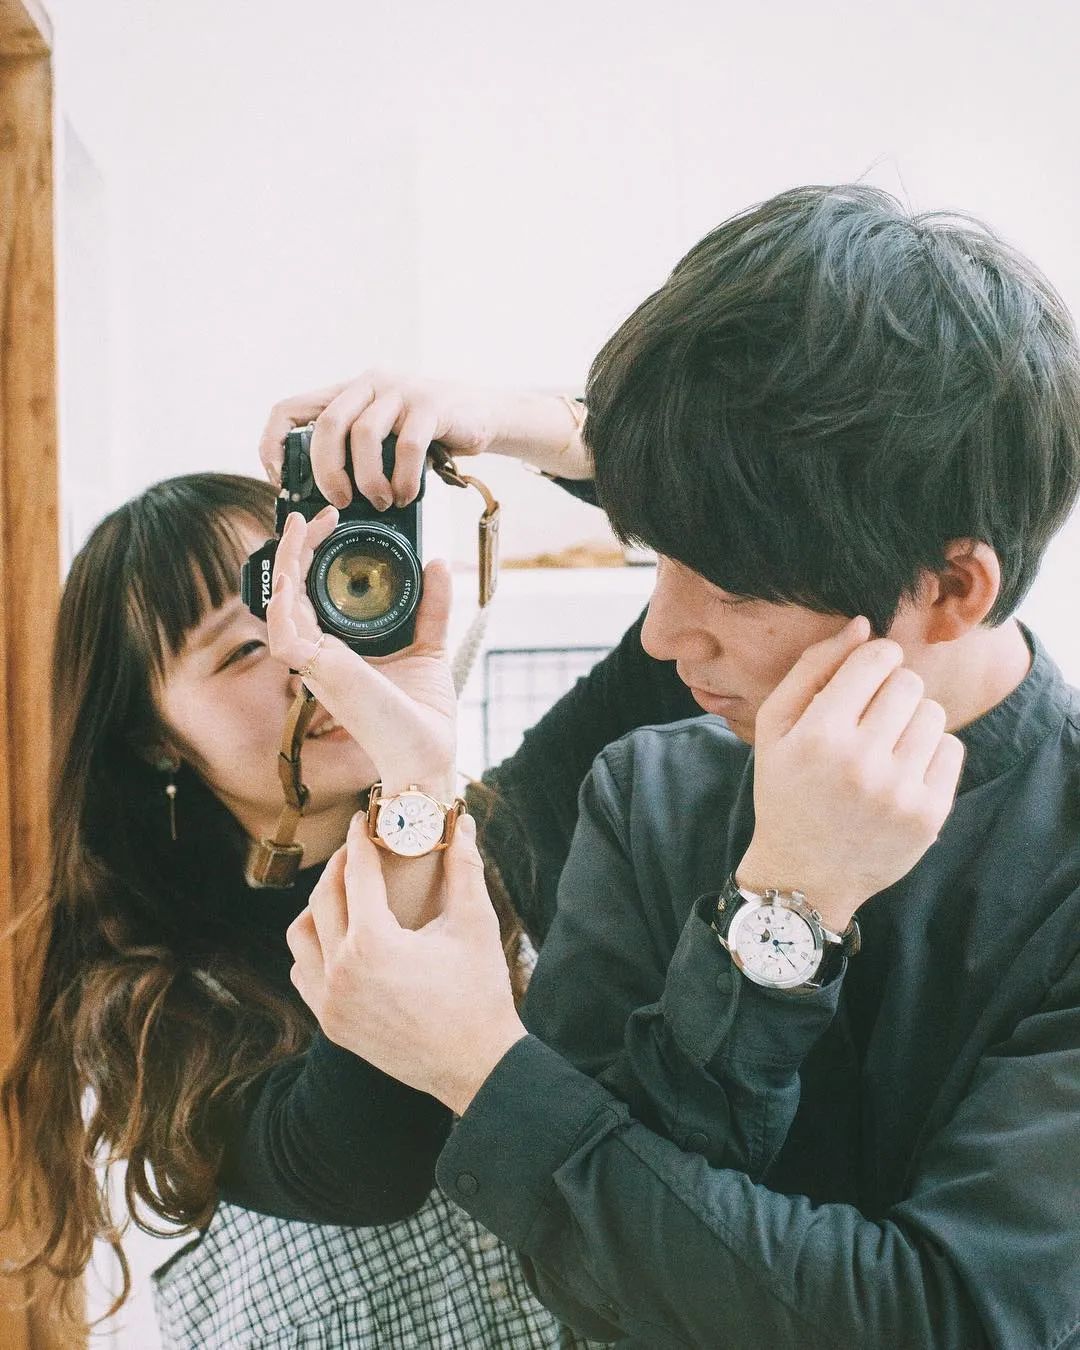 日本情侣摄影师拍下两代人的日常70w网友羡慕到哭这种恩爱秀的却很